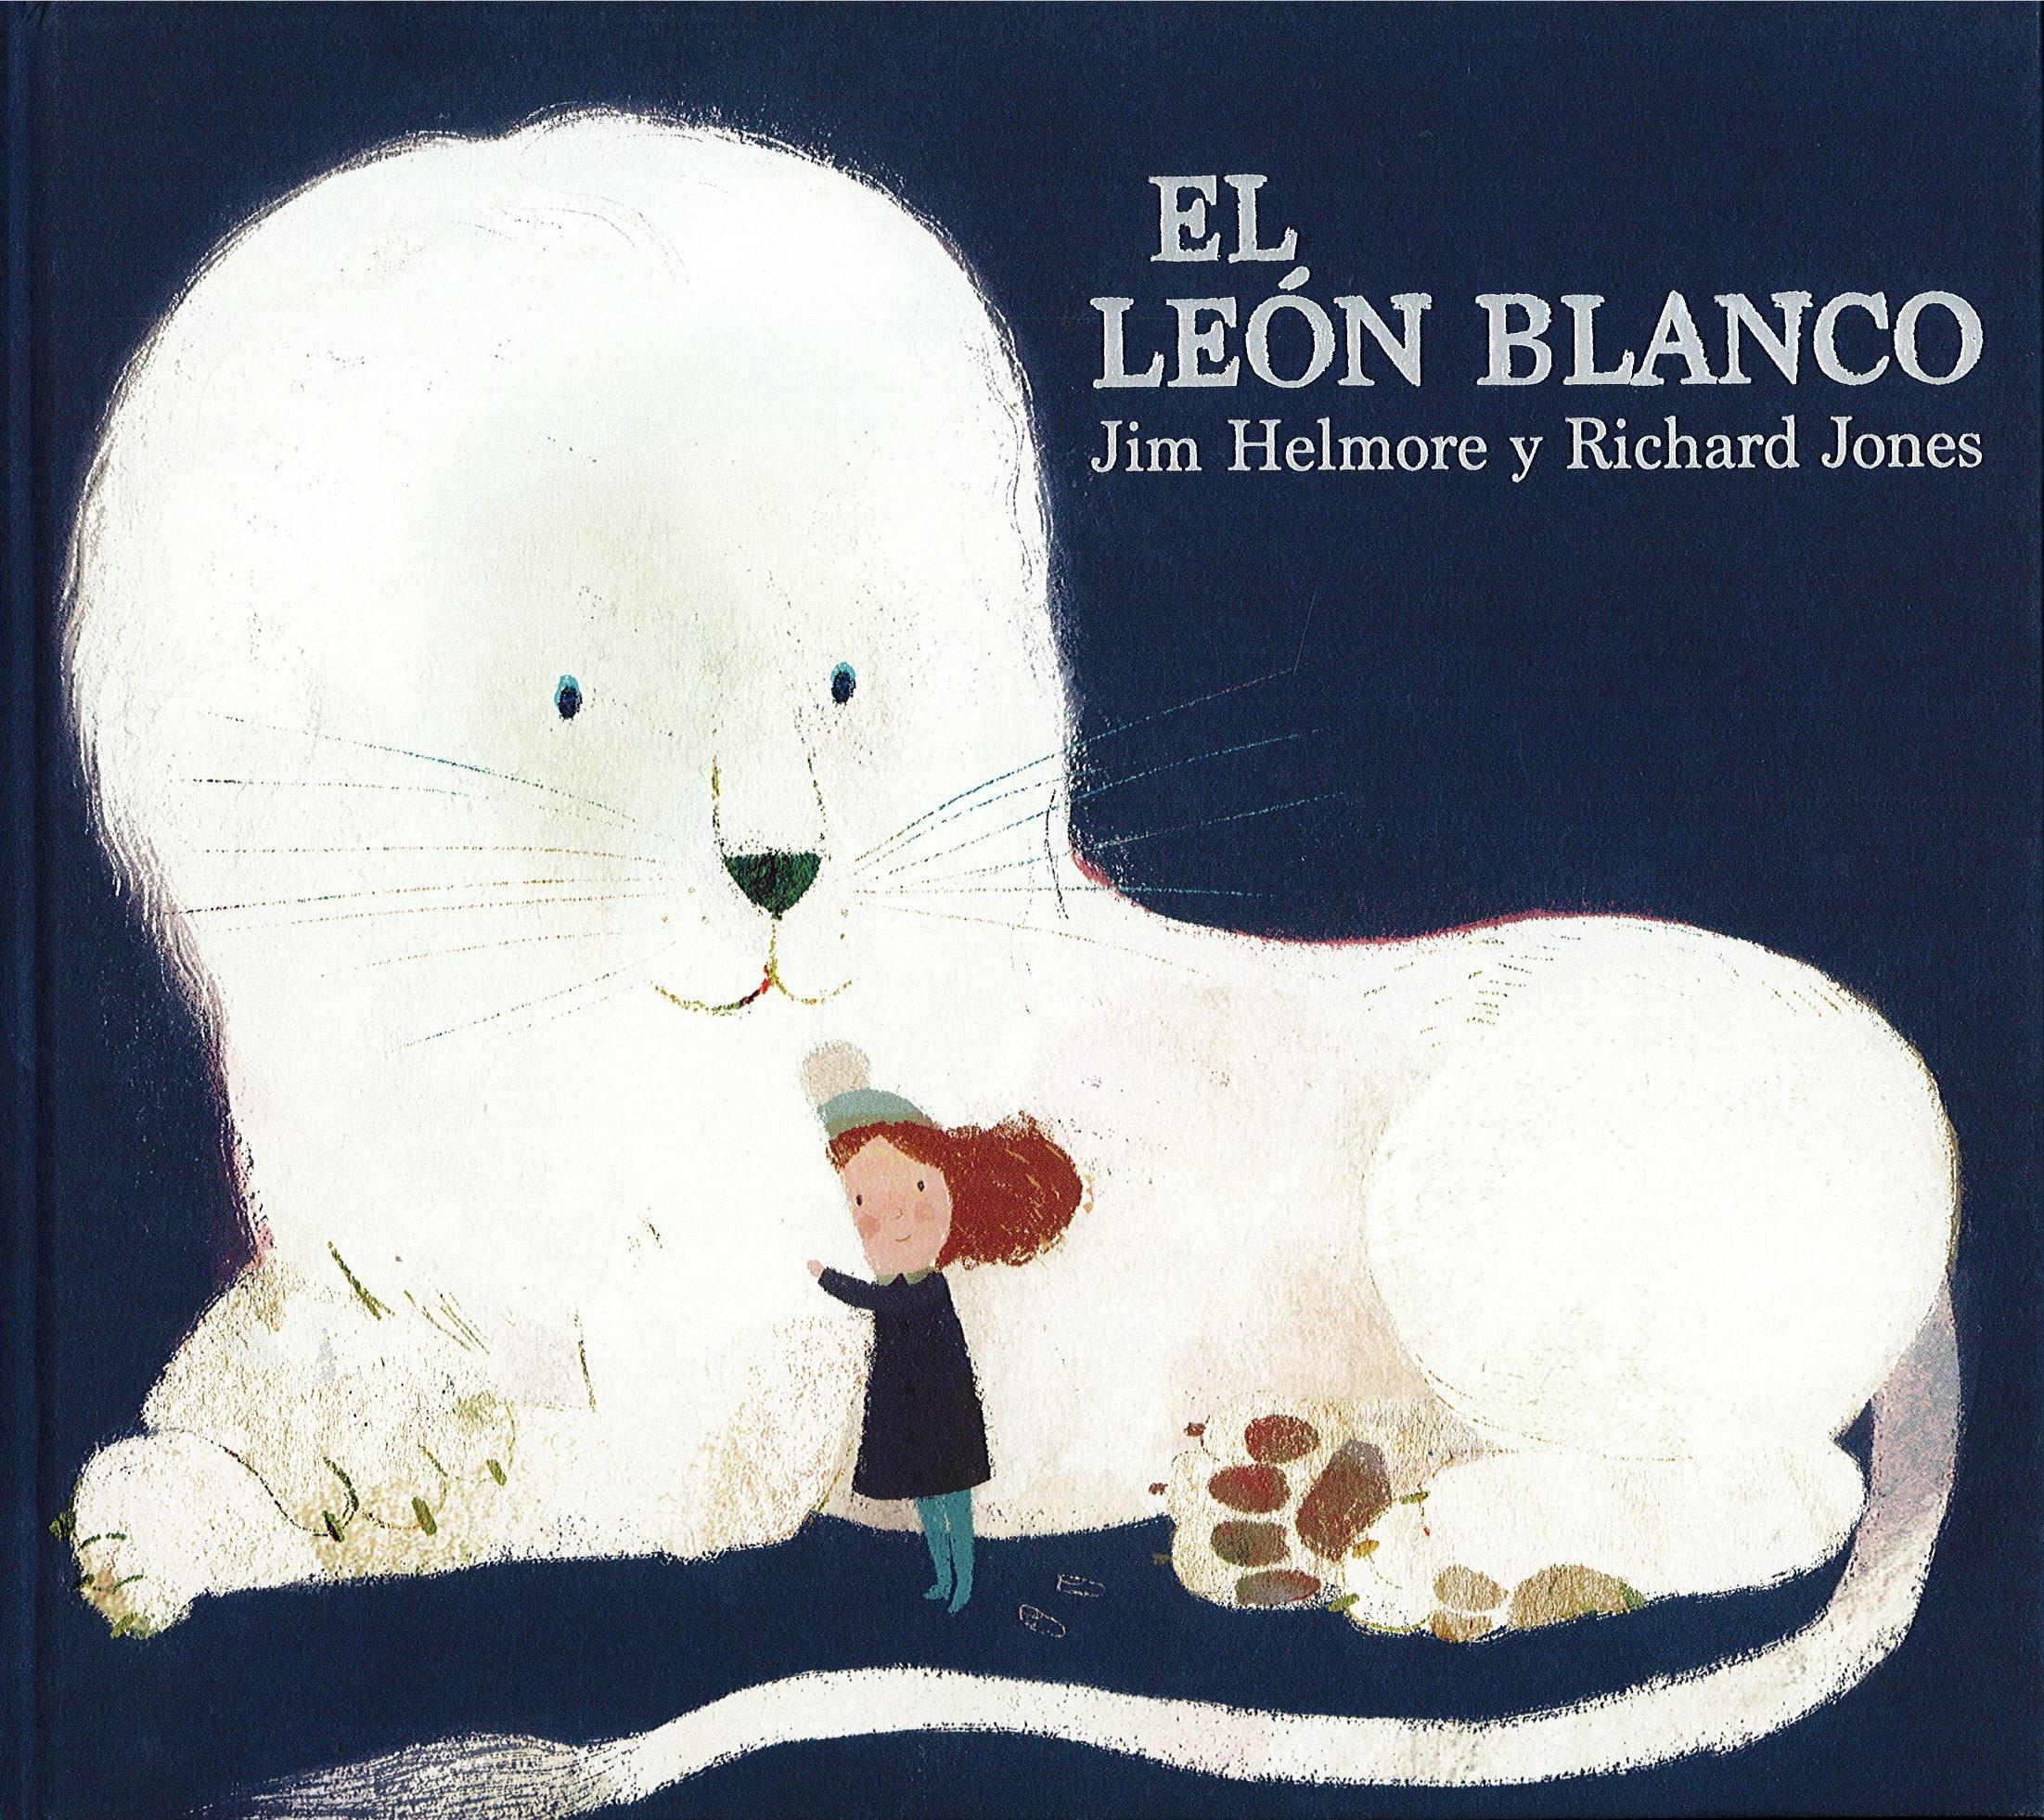 El León Blanco